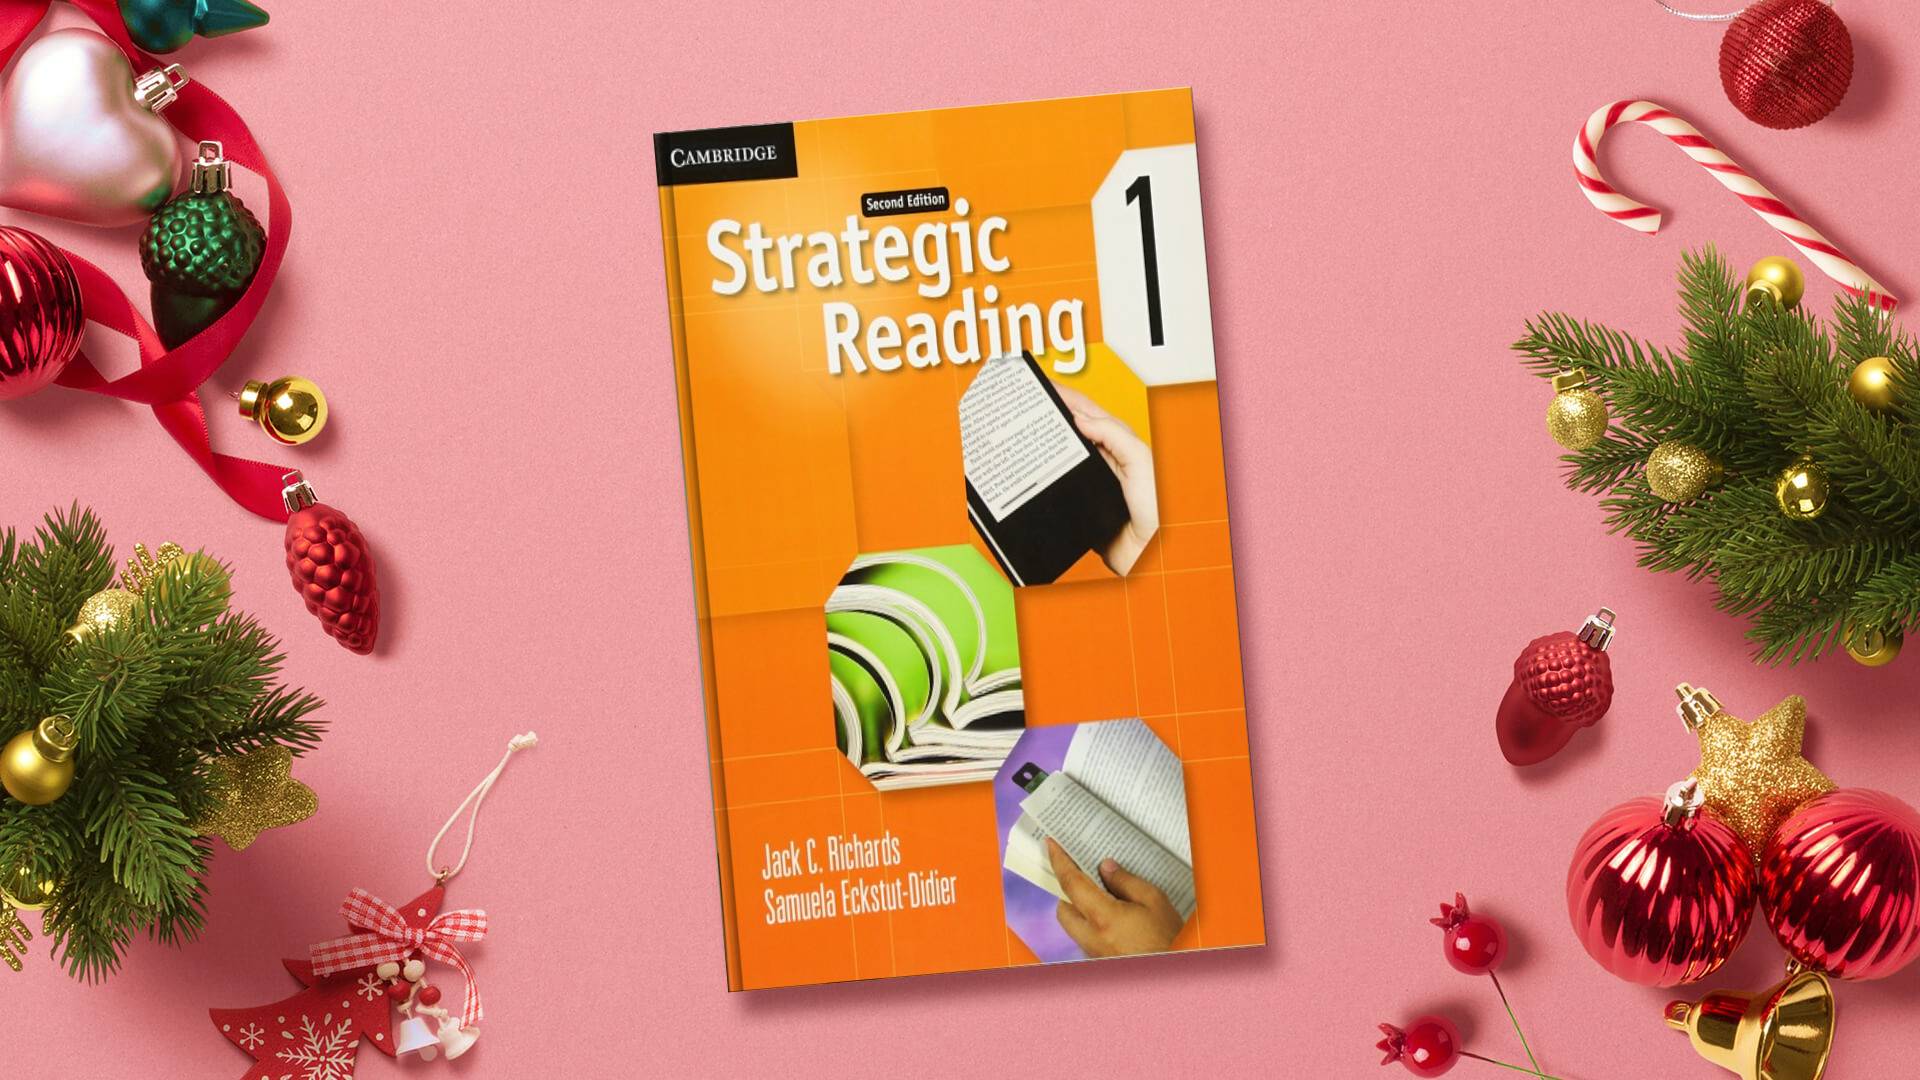 خرید کتاب زبان انگلیسی | کتاب استراتژیک ریدینگ یک ویرایش دوم | خرید کتاب Strategic Reading 1 Second Edition